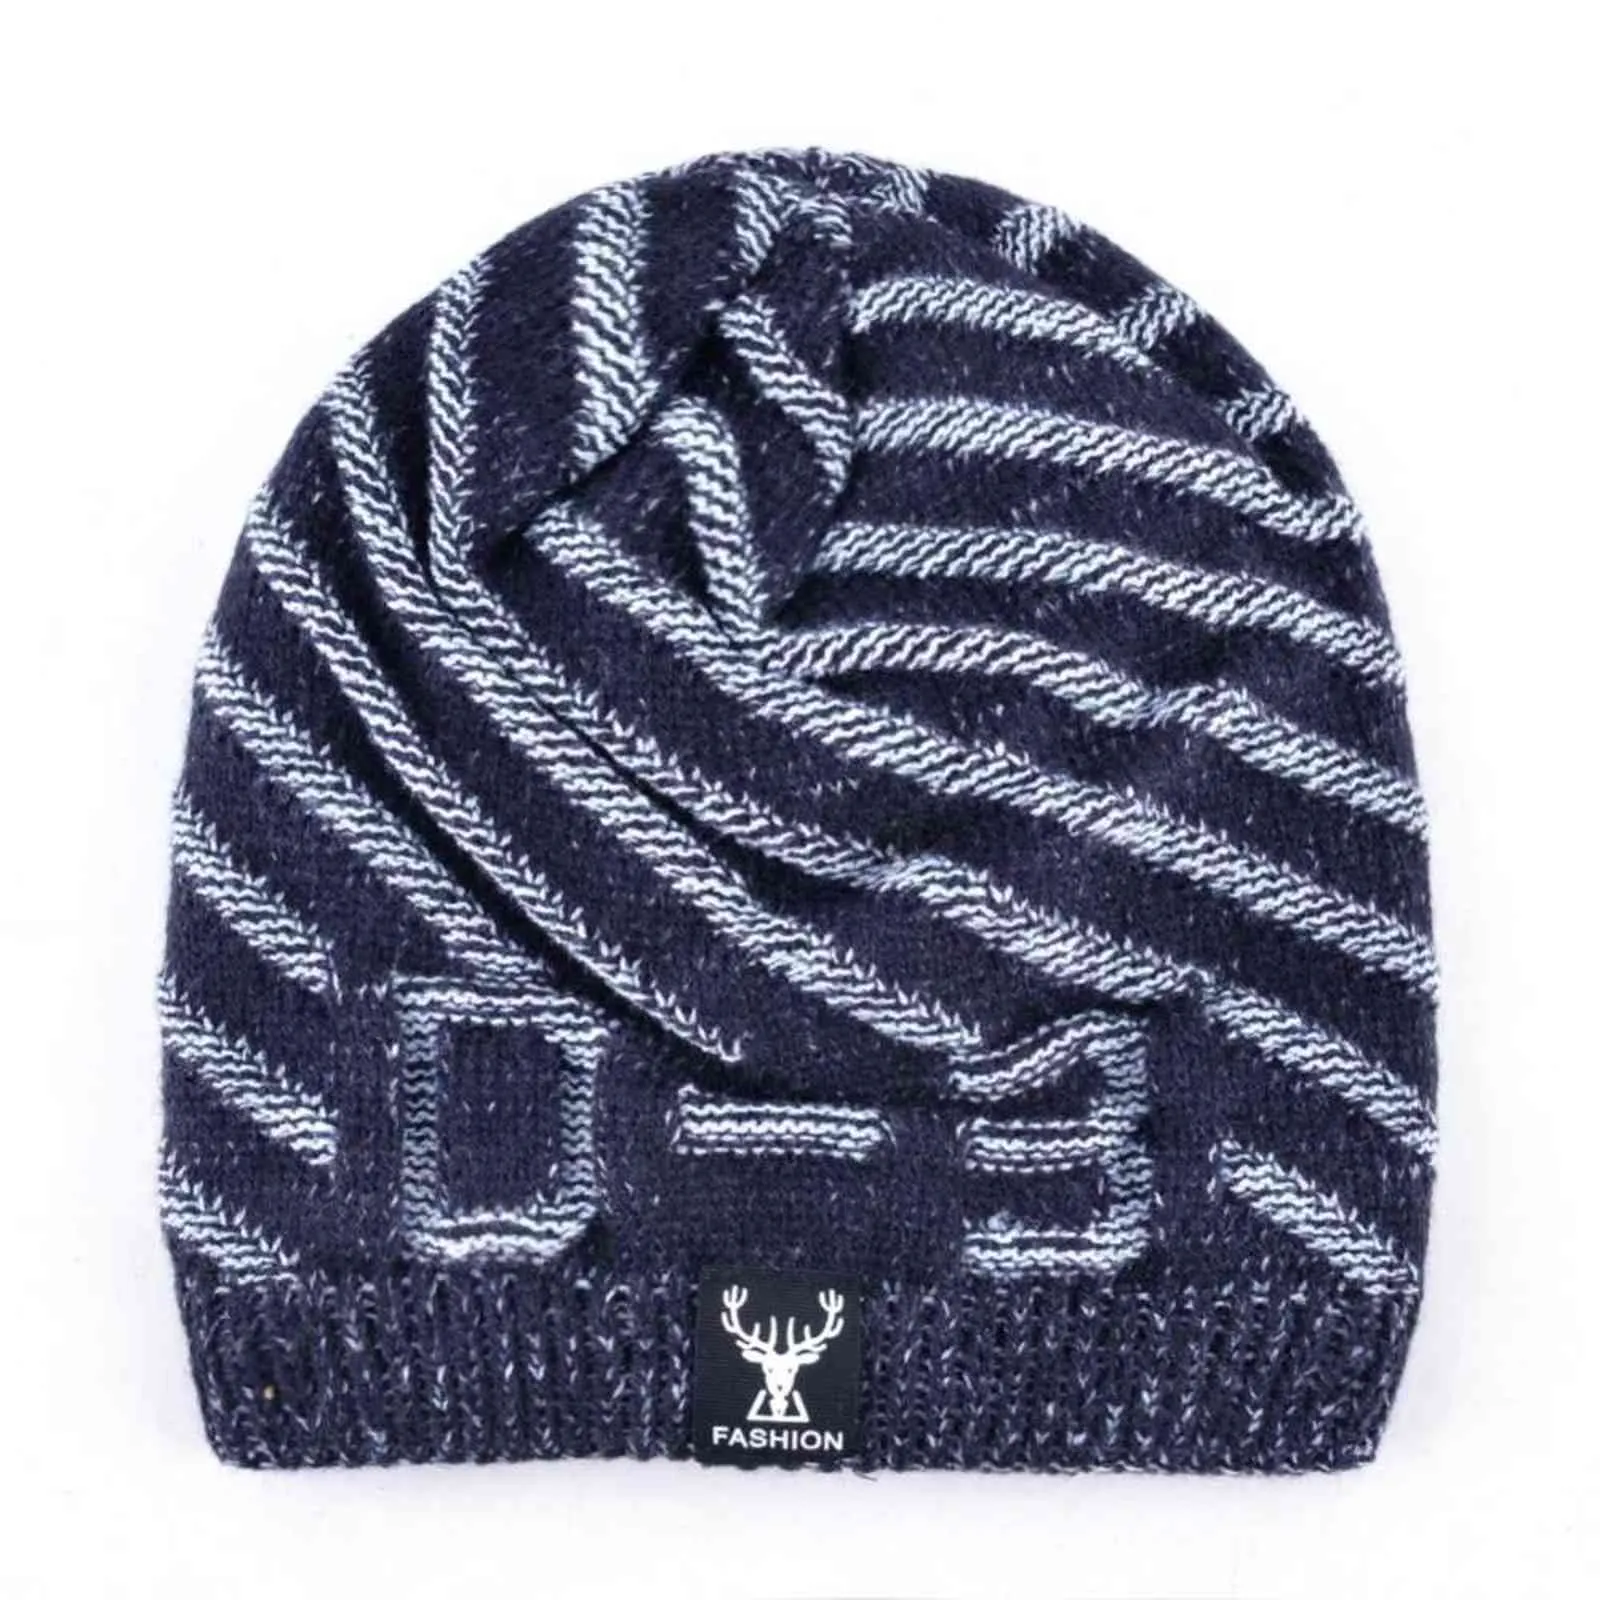 TQMSMY 2018 Beanies Knit Männer Winter Hut Caps Skullies Bonnet hinzufügen samt Hüte Für Männer Frauen Beanie Warme Baggy Gestrickte hut TMD29 Y21111